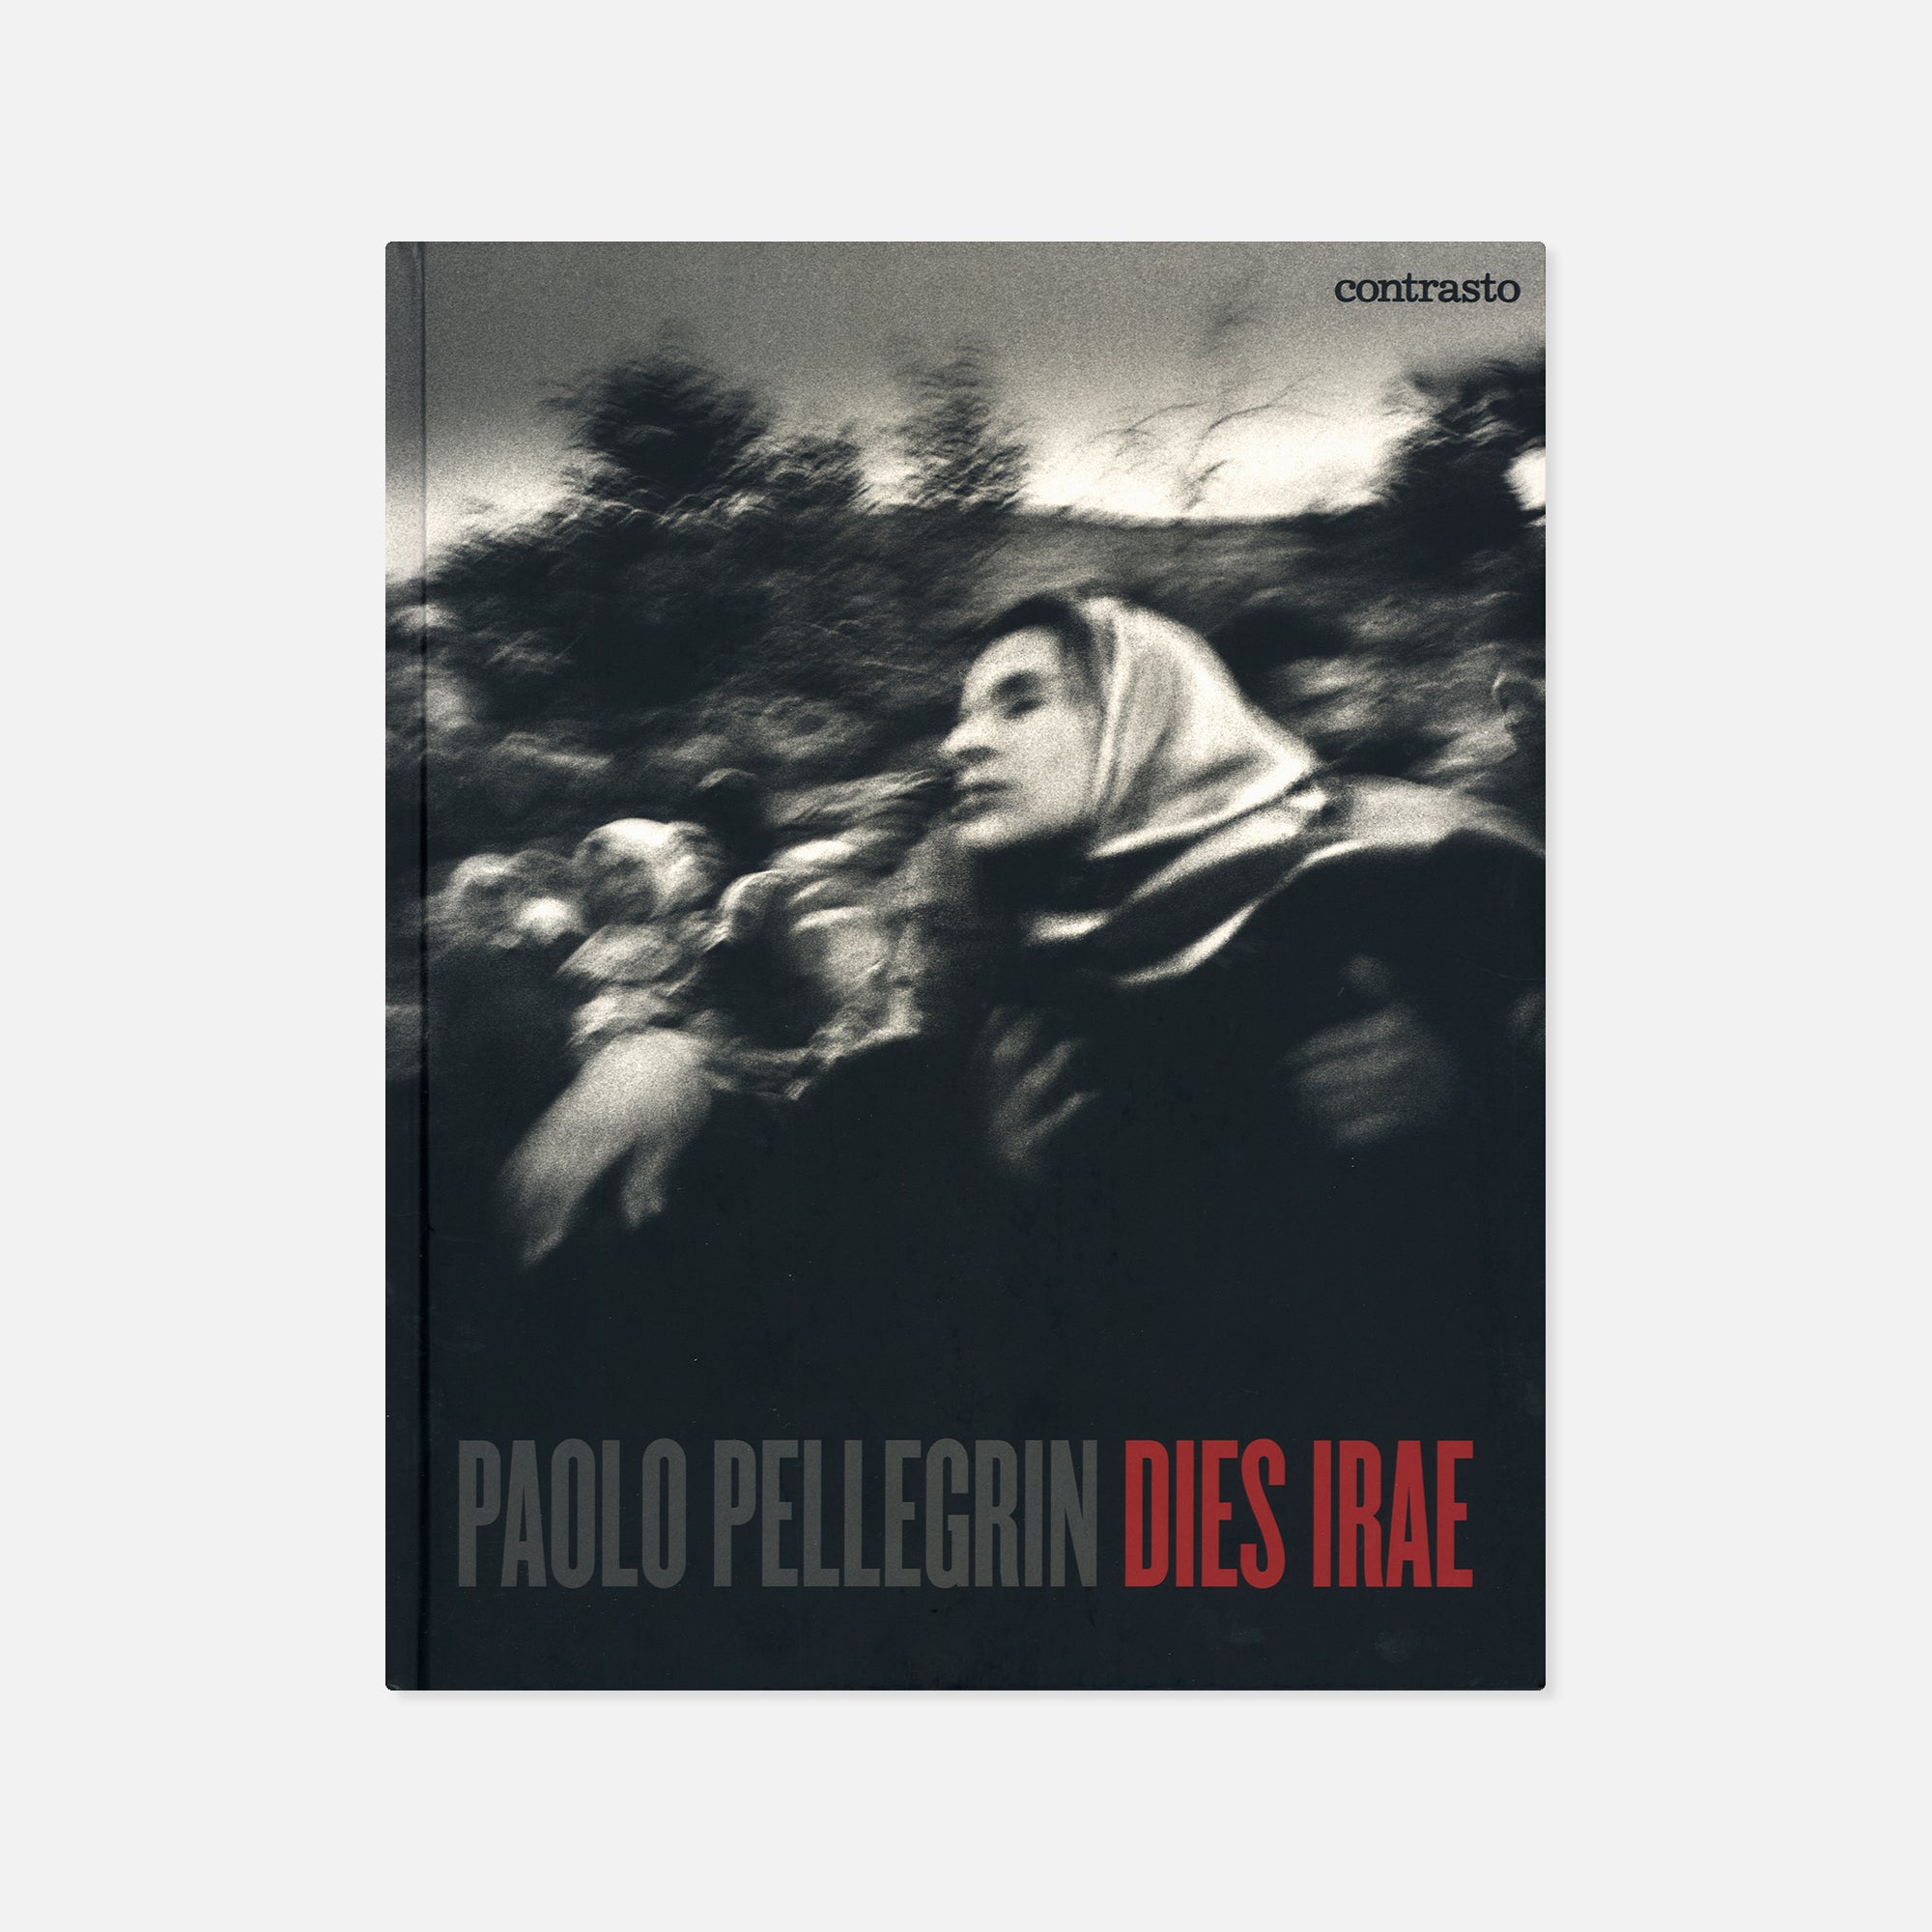 Paolo Pellegrin — Dies Irae